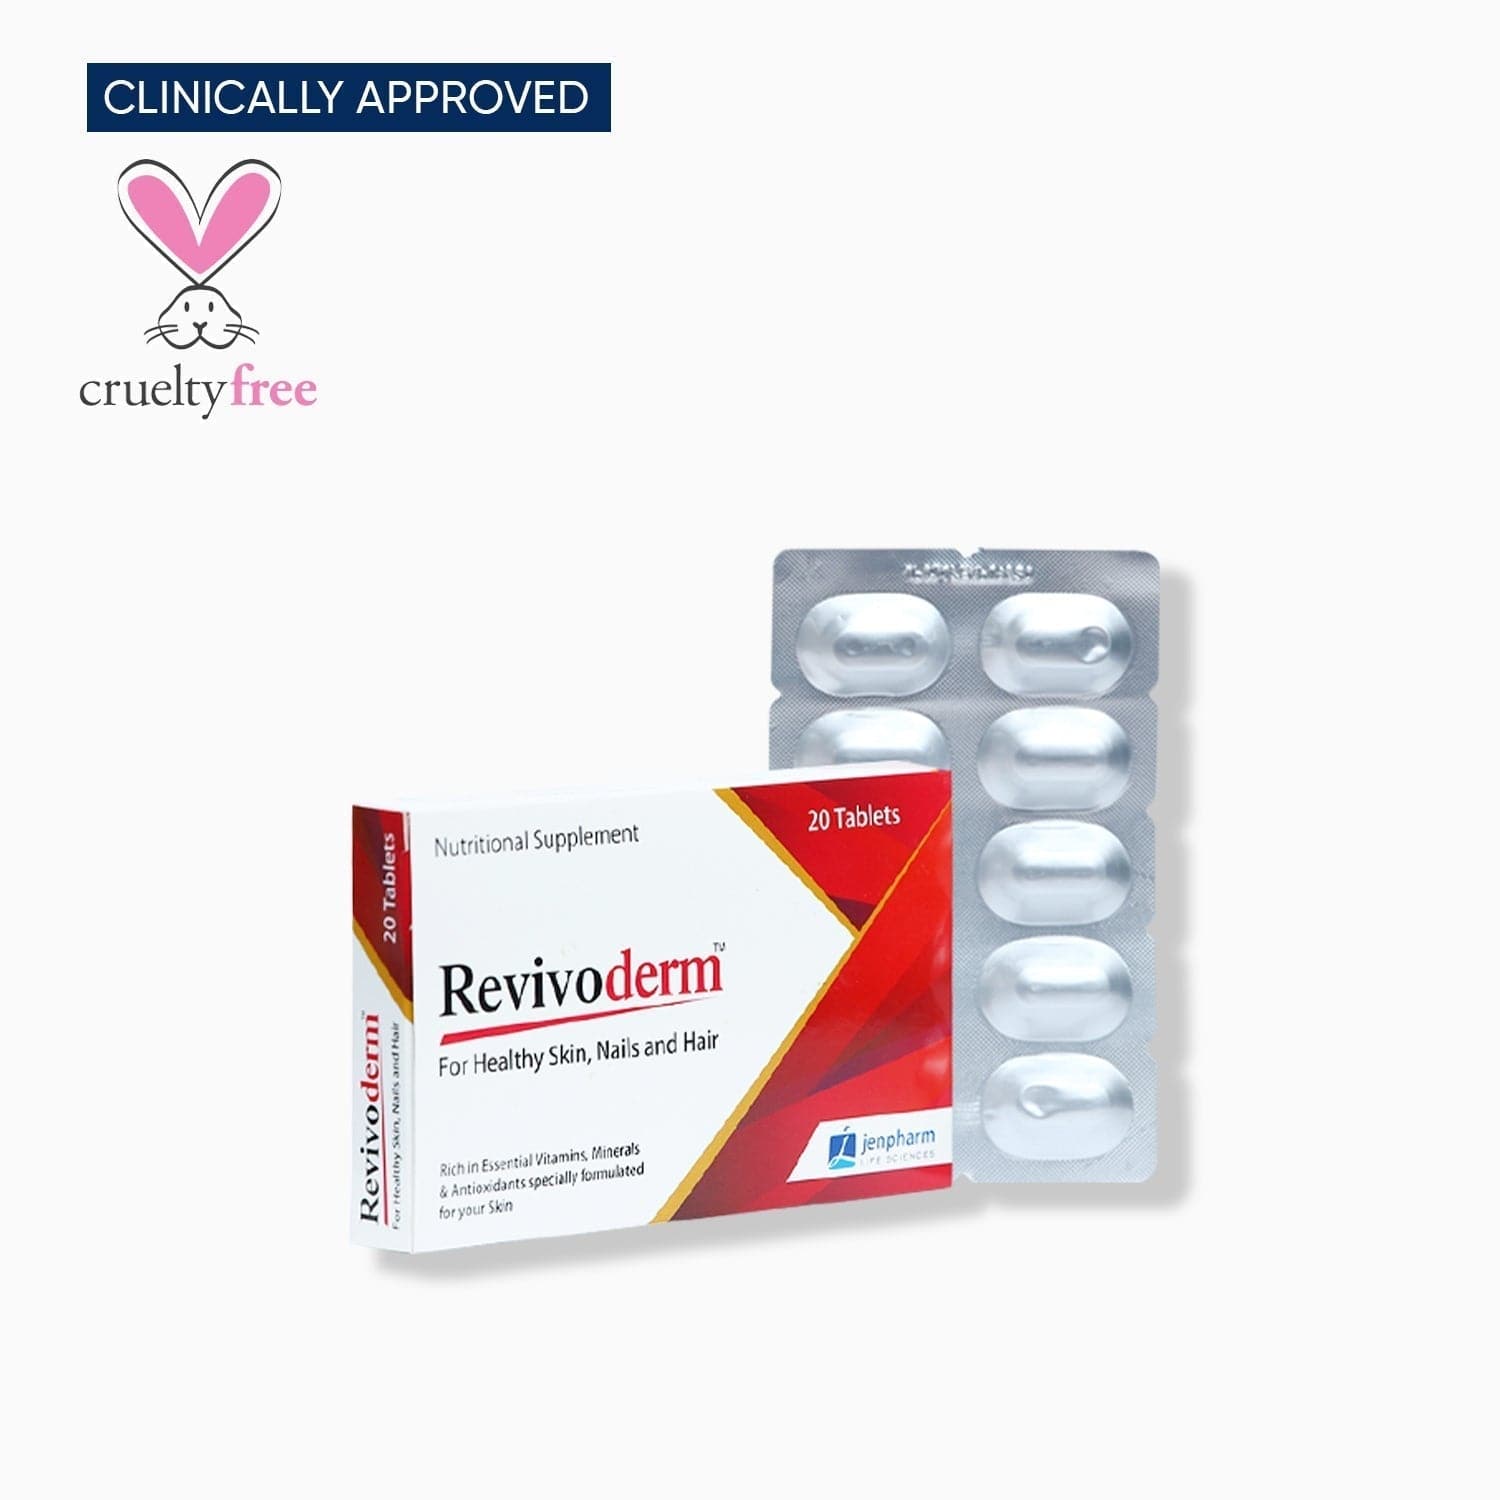 Jenpharm Revivoderm - Premium Product from Jenpharm - Just Rs 898! Shop now at Cozmetica